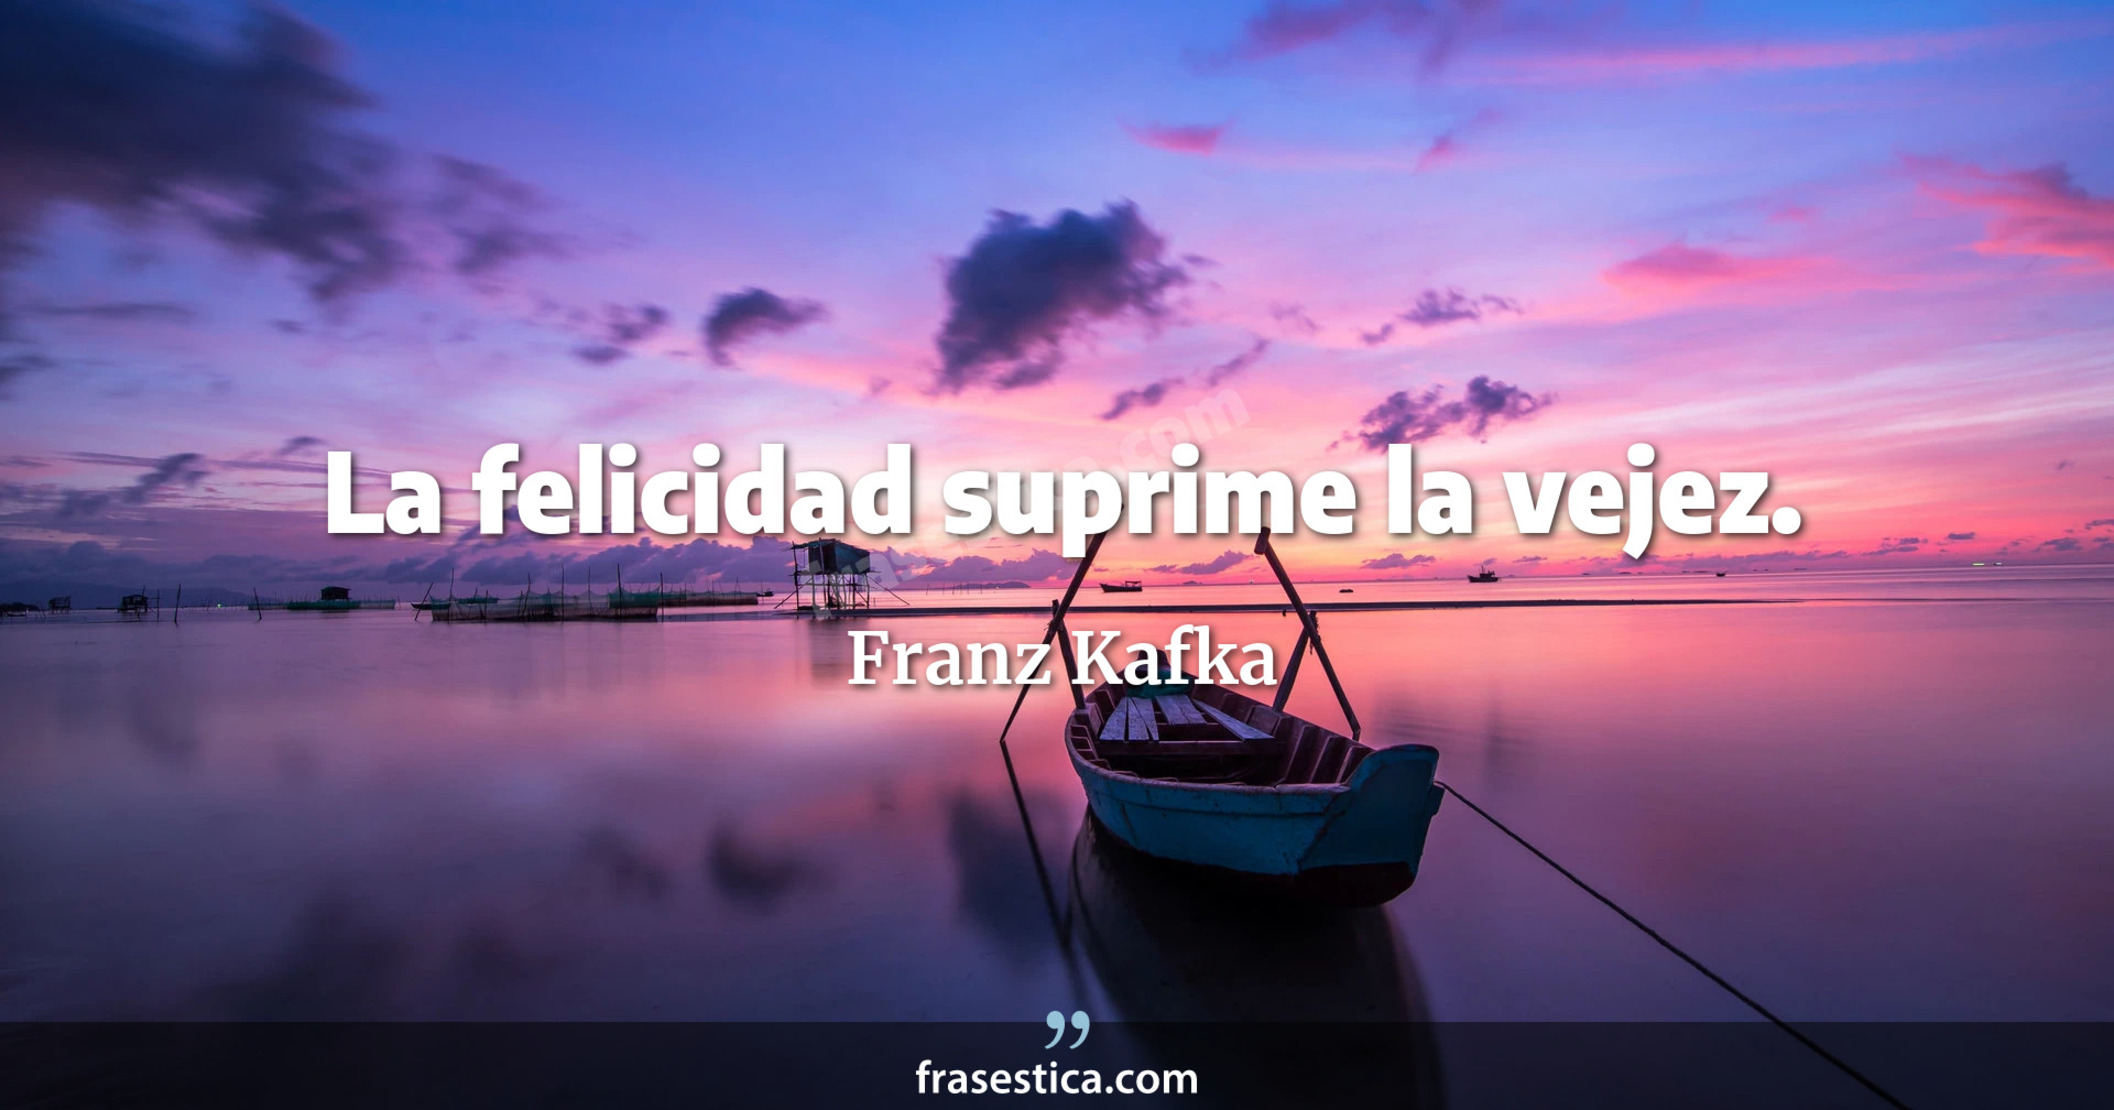 La felicidad suprime la vejez. - Franz Kafka